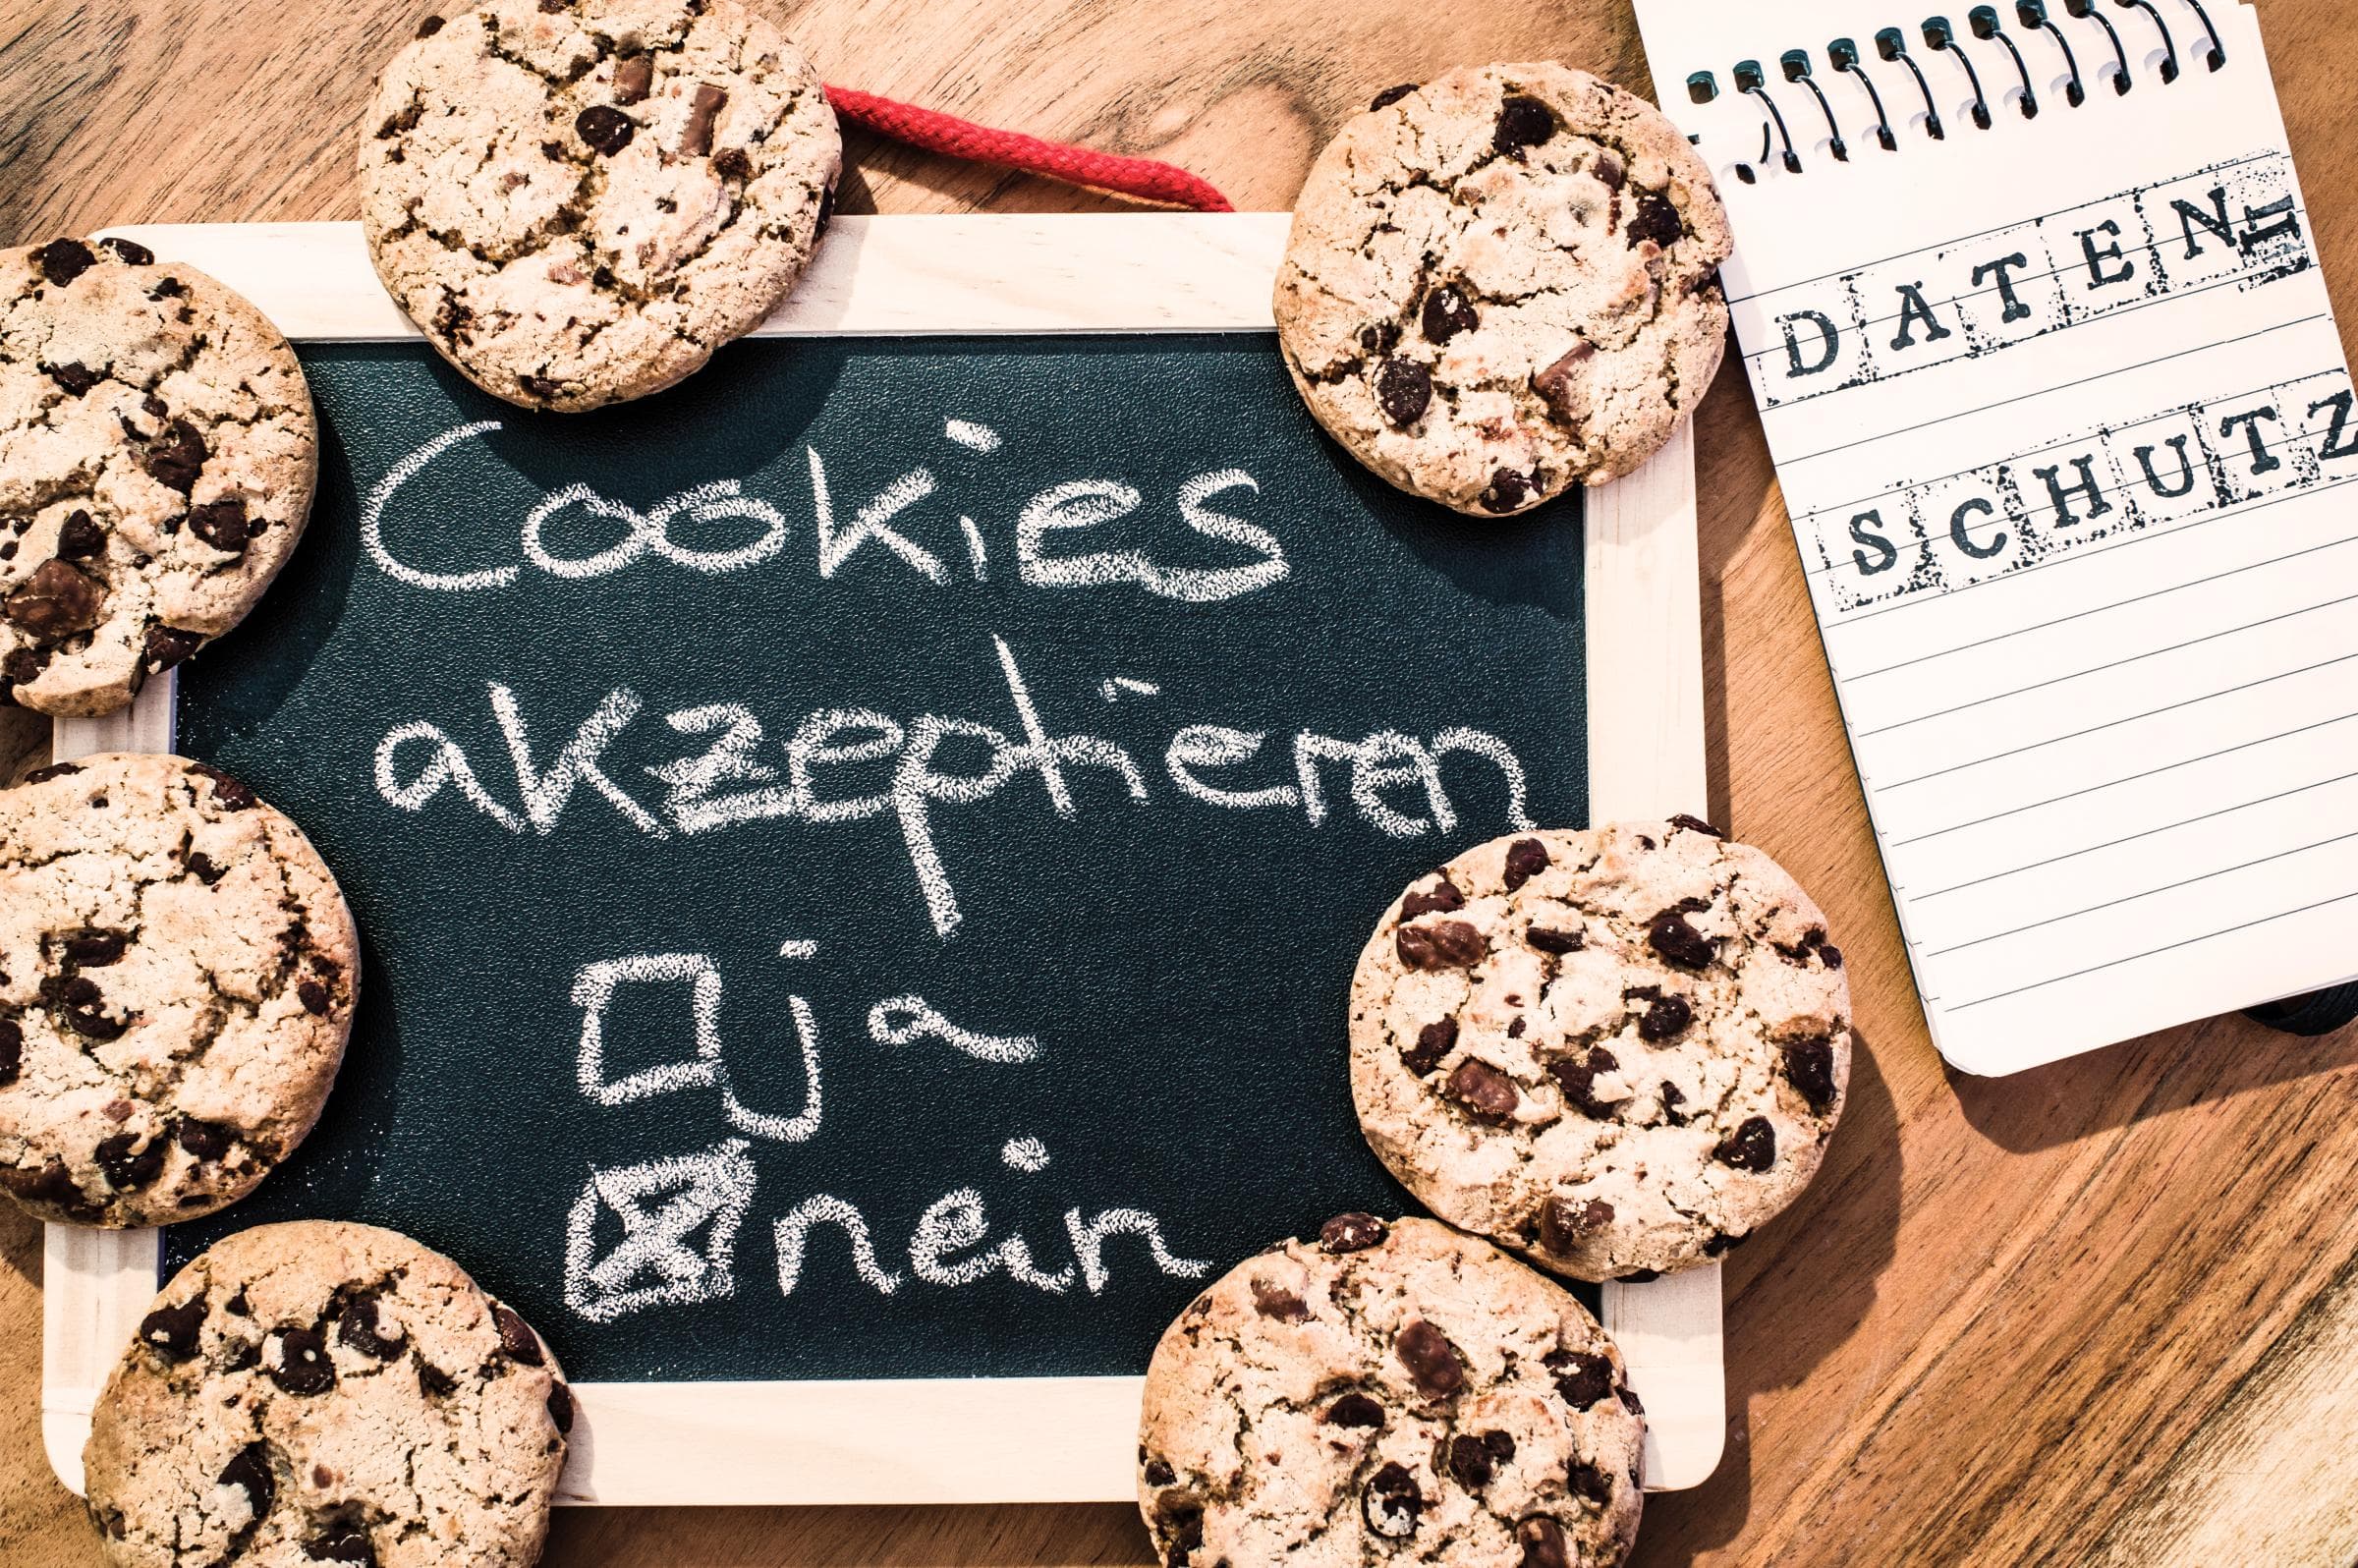 Bild zum Datenschutz: Schokoladenkekse auf einer Kreidetafel mit dem Hinweis "Cookies akzeptieren" und den Auswahlmöglichkeiten "ja" und "nein". 